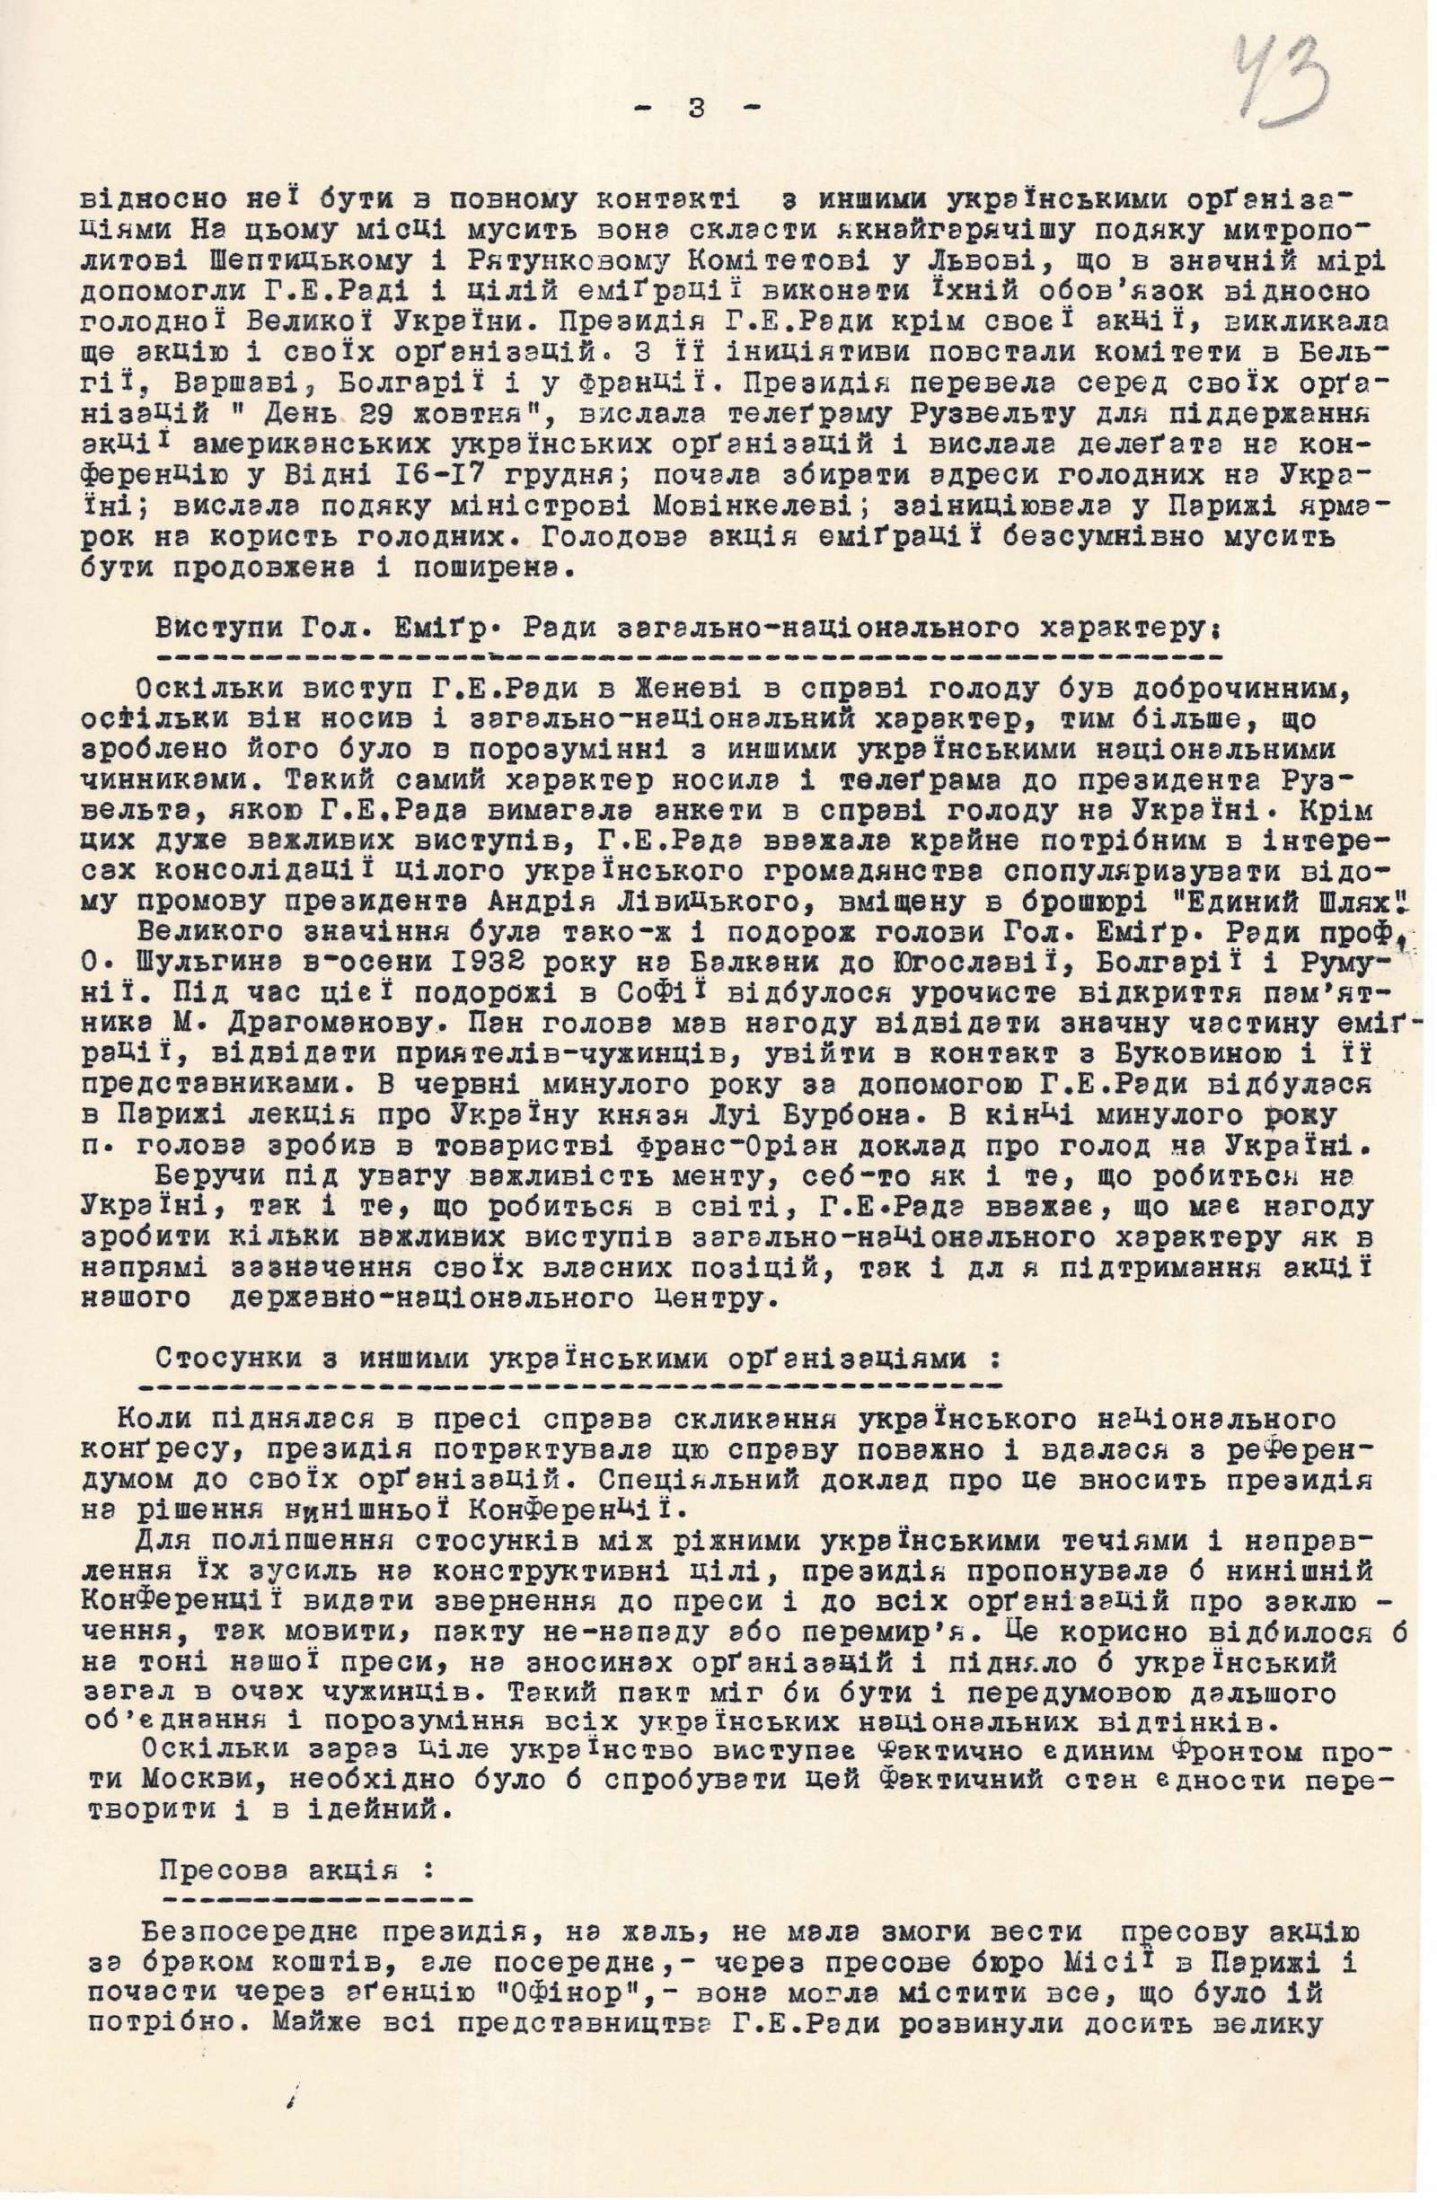 З протоколу Третьої конференції (пленуму) Головної еміграційної ради у Празі про проведення акцій на користь голодуючого населення в Україні. 14-15 лютого 1934 р.